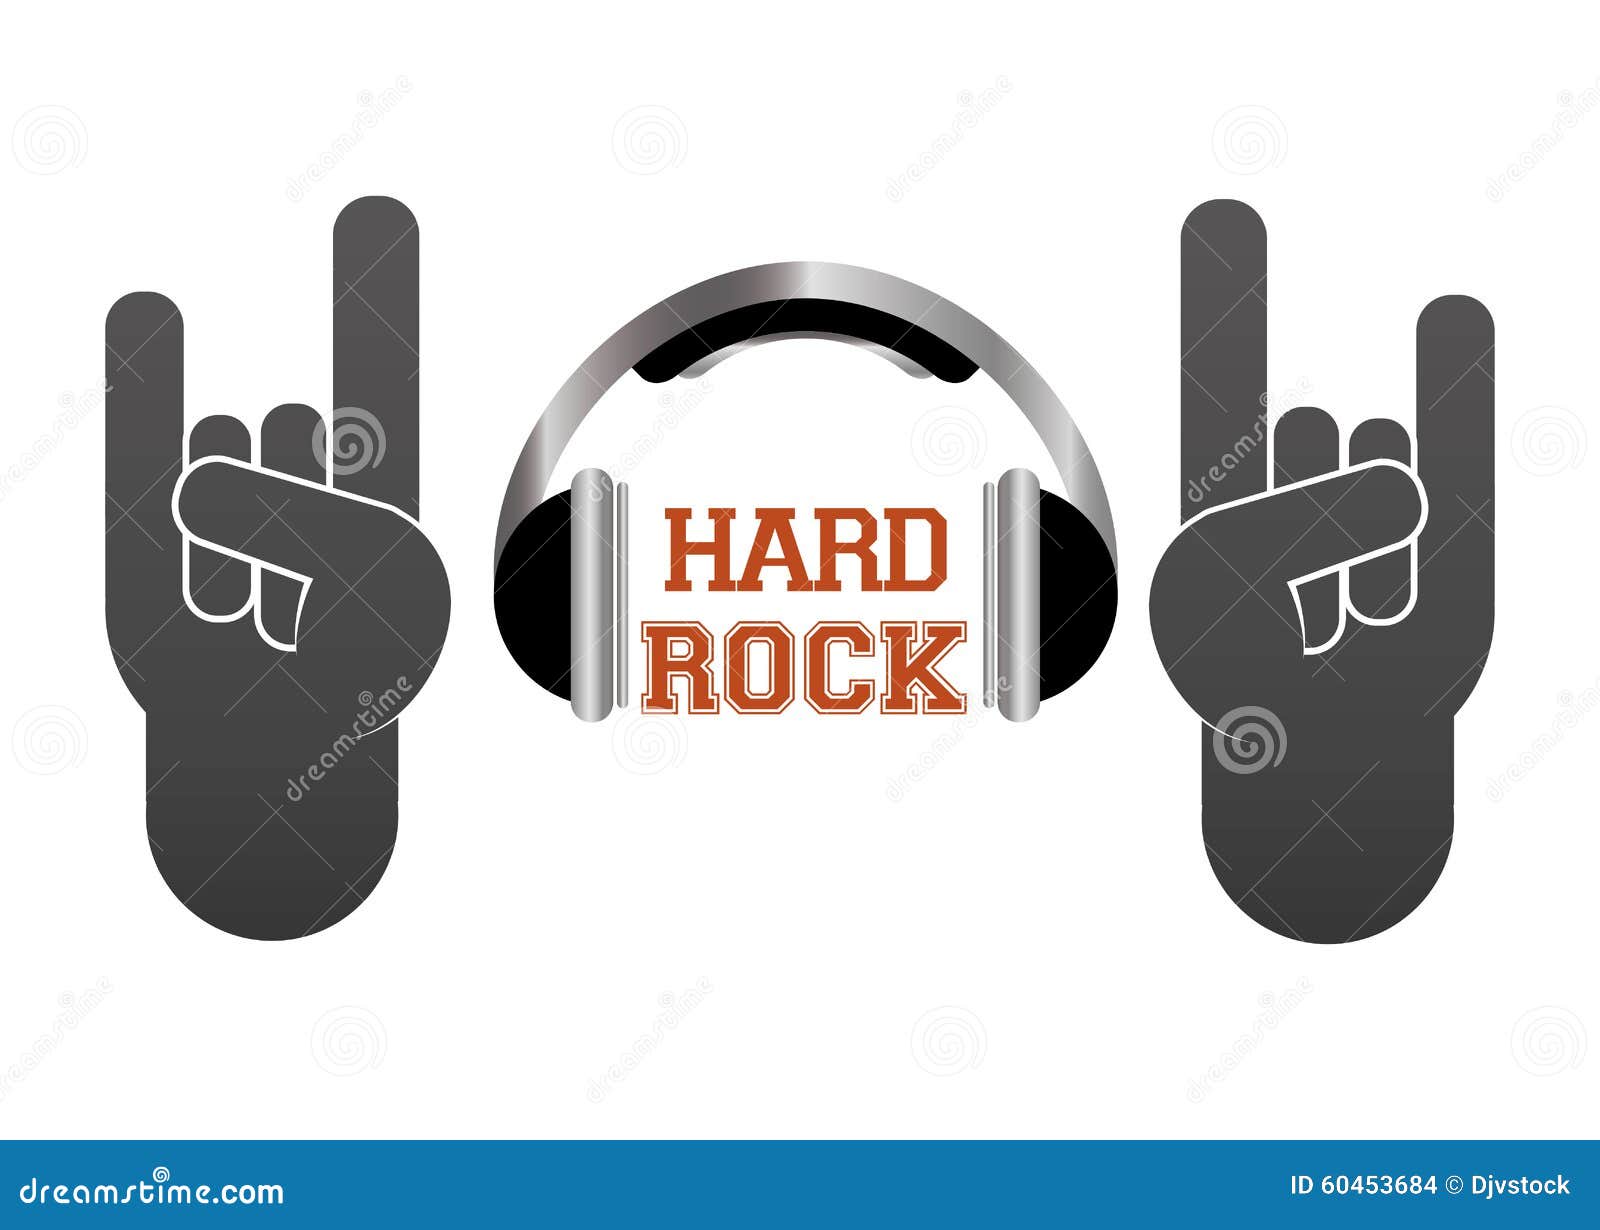  Hard  Rock  design stock vector Illustration of emblem 